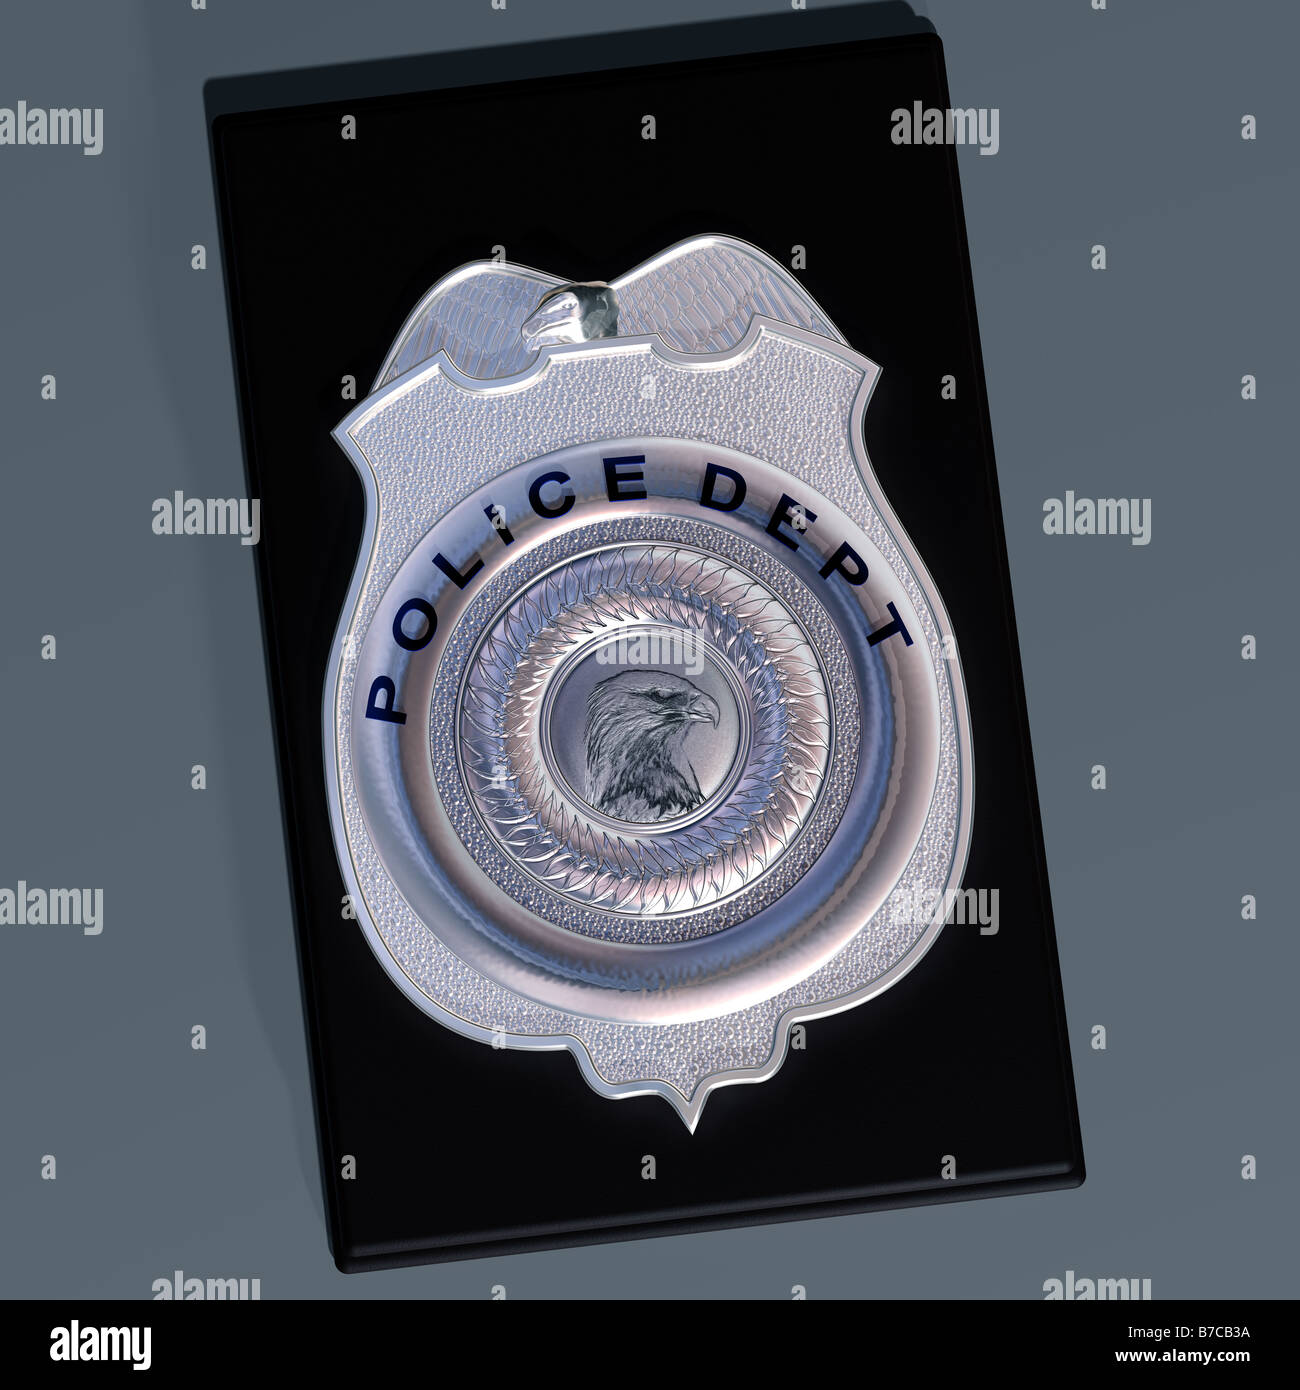 Detaillierte Darstellung der Polizei Schild auf einem Leder-Portemonnaie Stockfoto